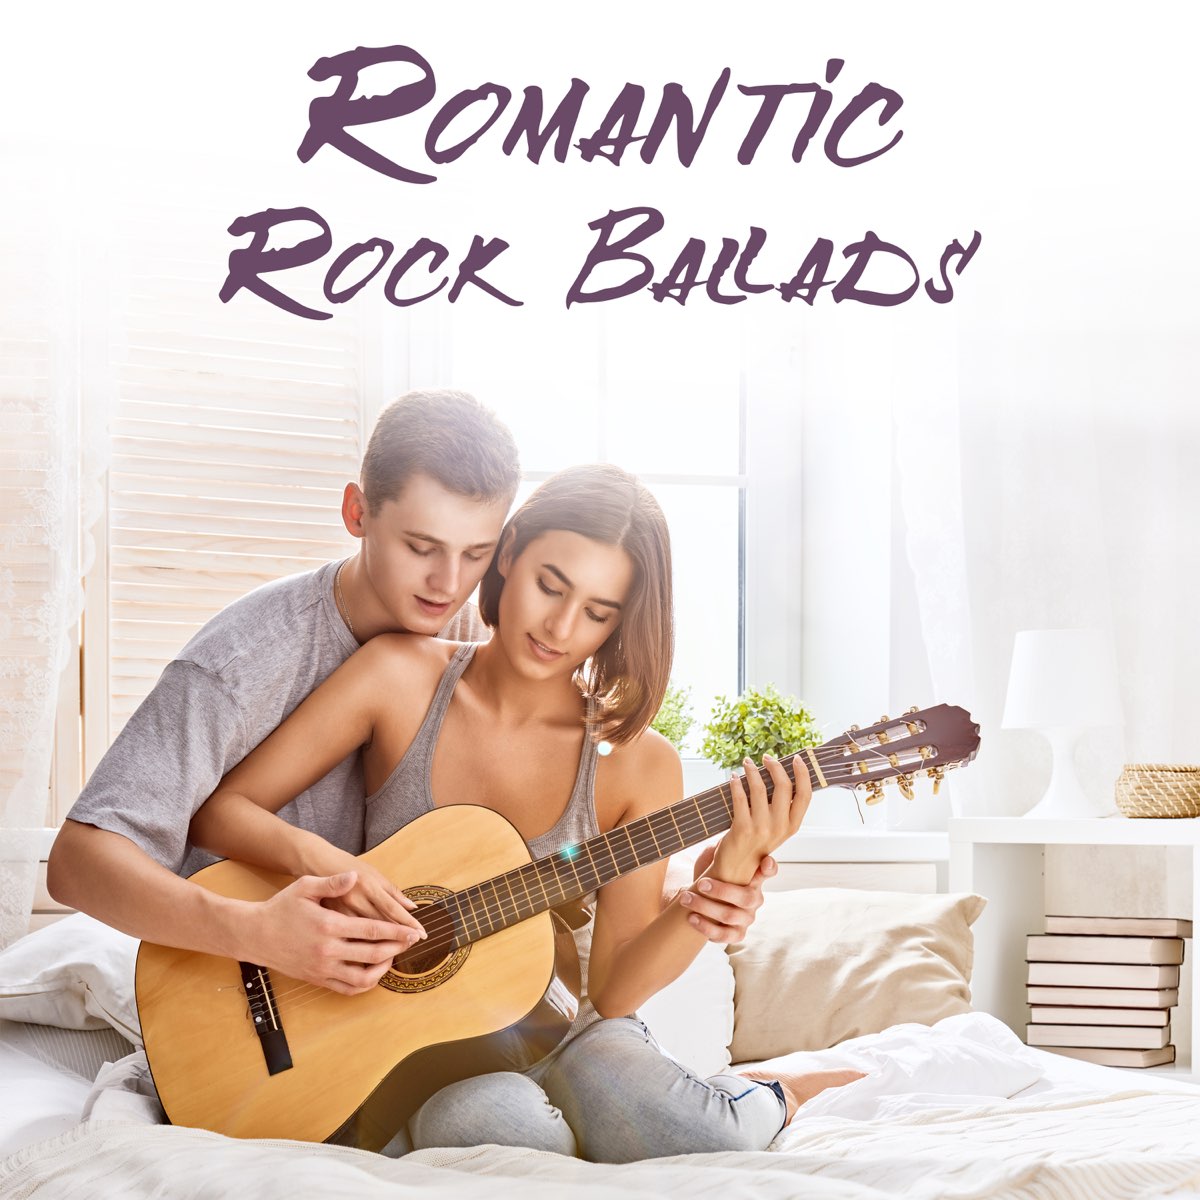 Музыка романтик коллекшн. Романтичный рок. Romantic Ballads. Romantic collection обложки. Обложка романтического альбома.